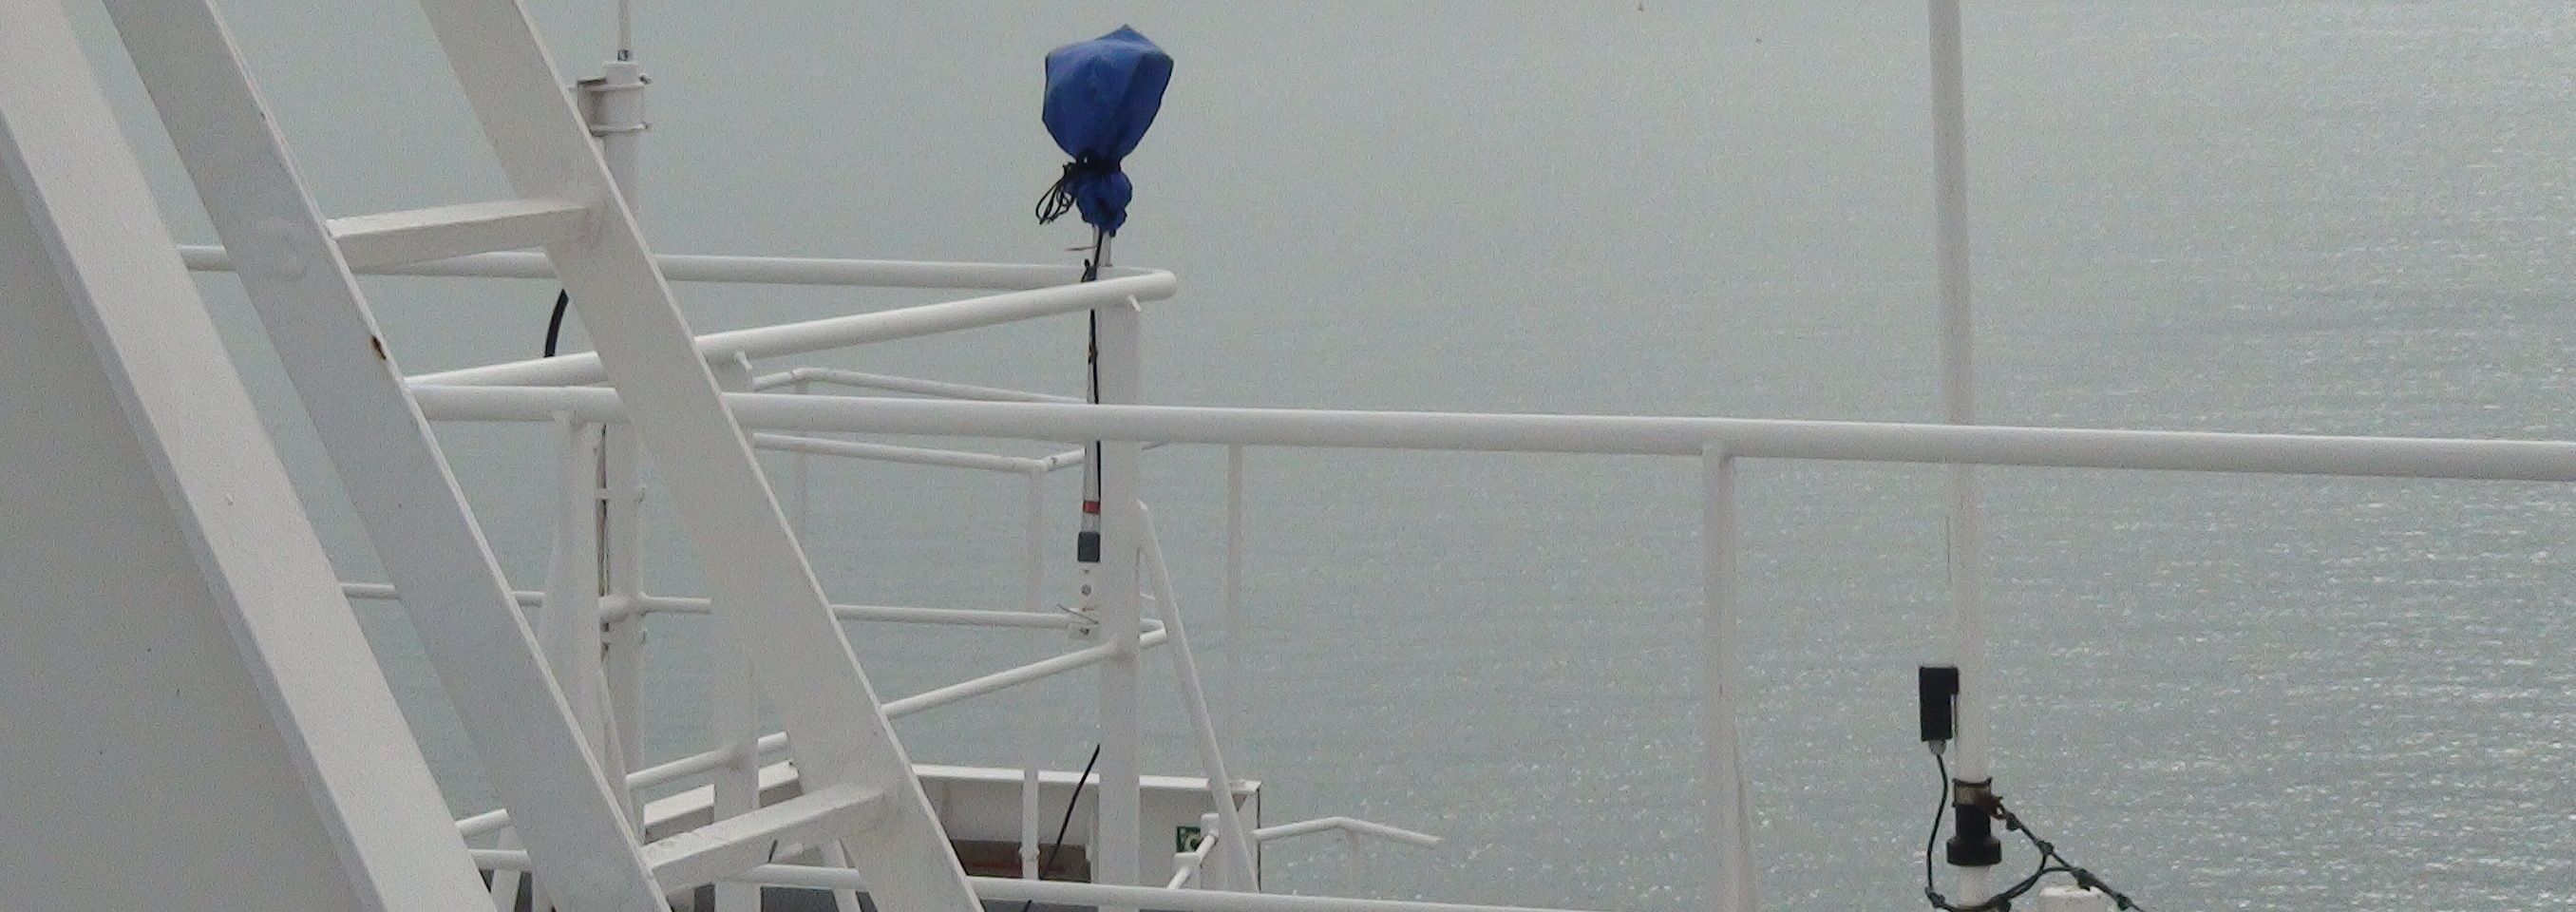 GPS Flot instalado en un buque amarrado en el puerto de La Coruña durante tres meses